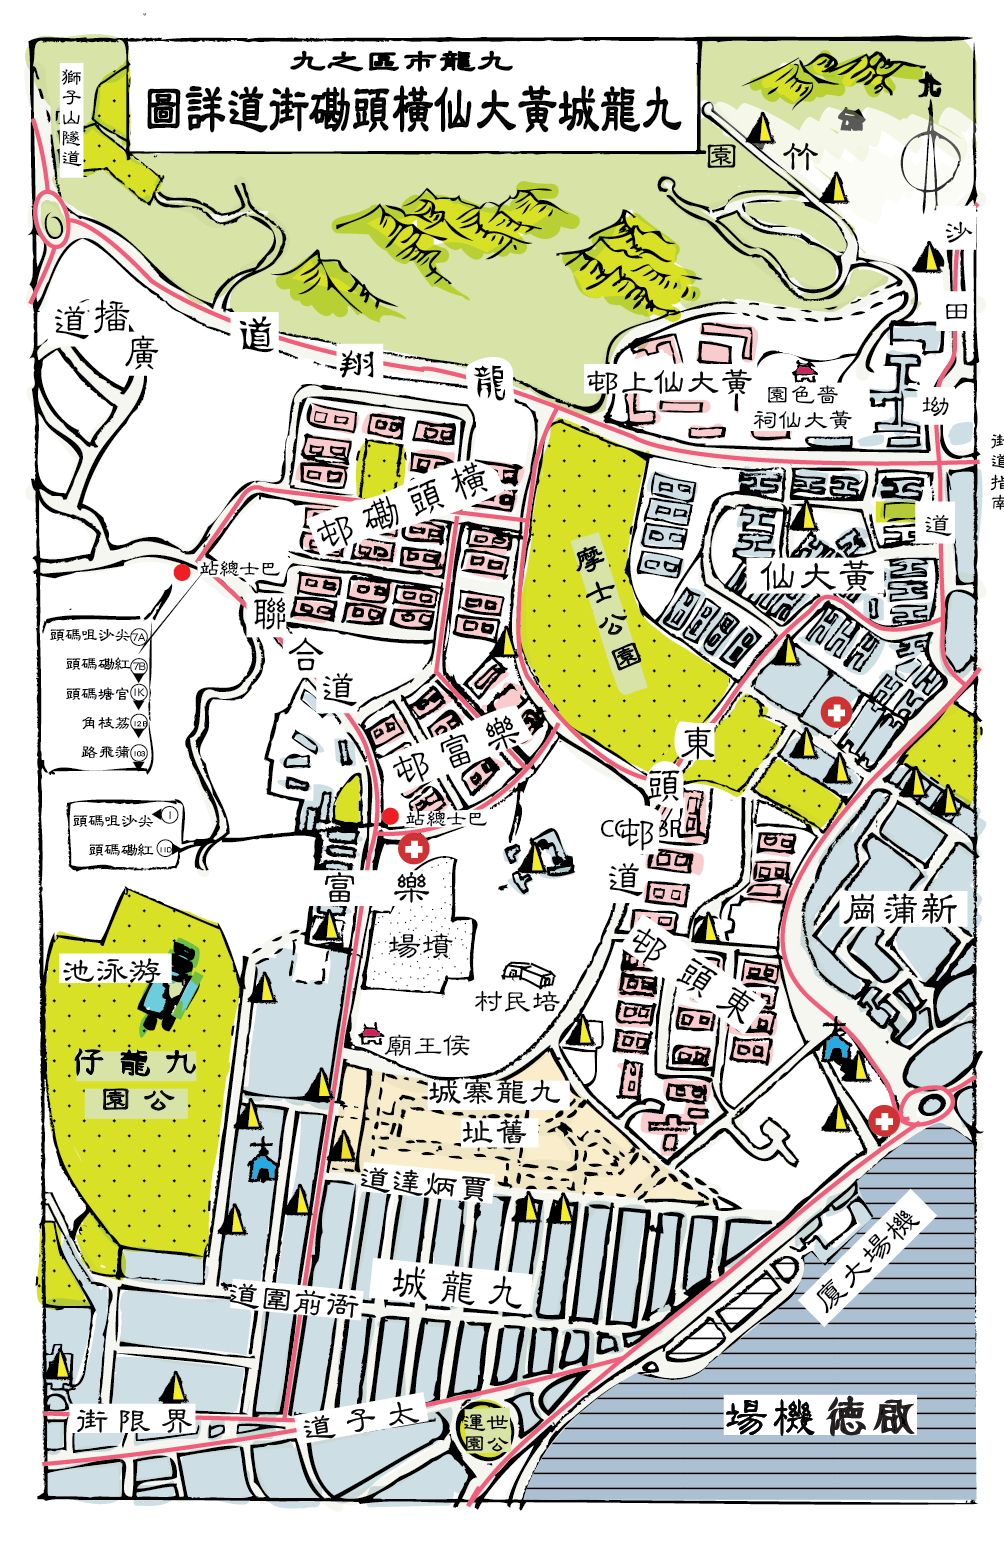 1977 啟德機場原址及附近環境（手繪地圖，參考：香港年鑑）